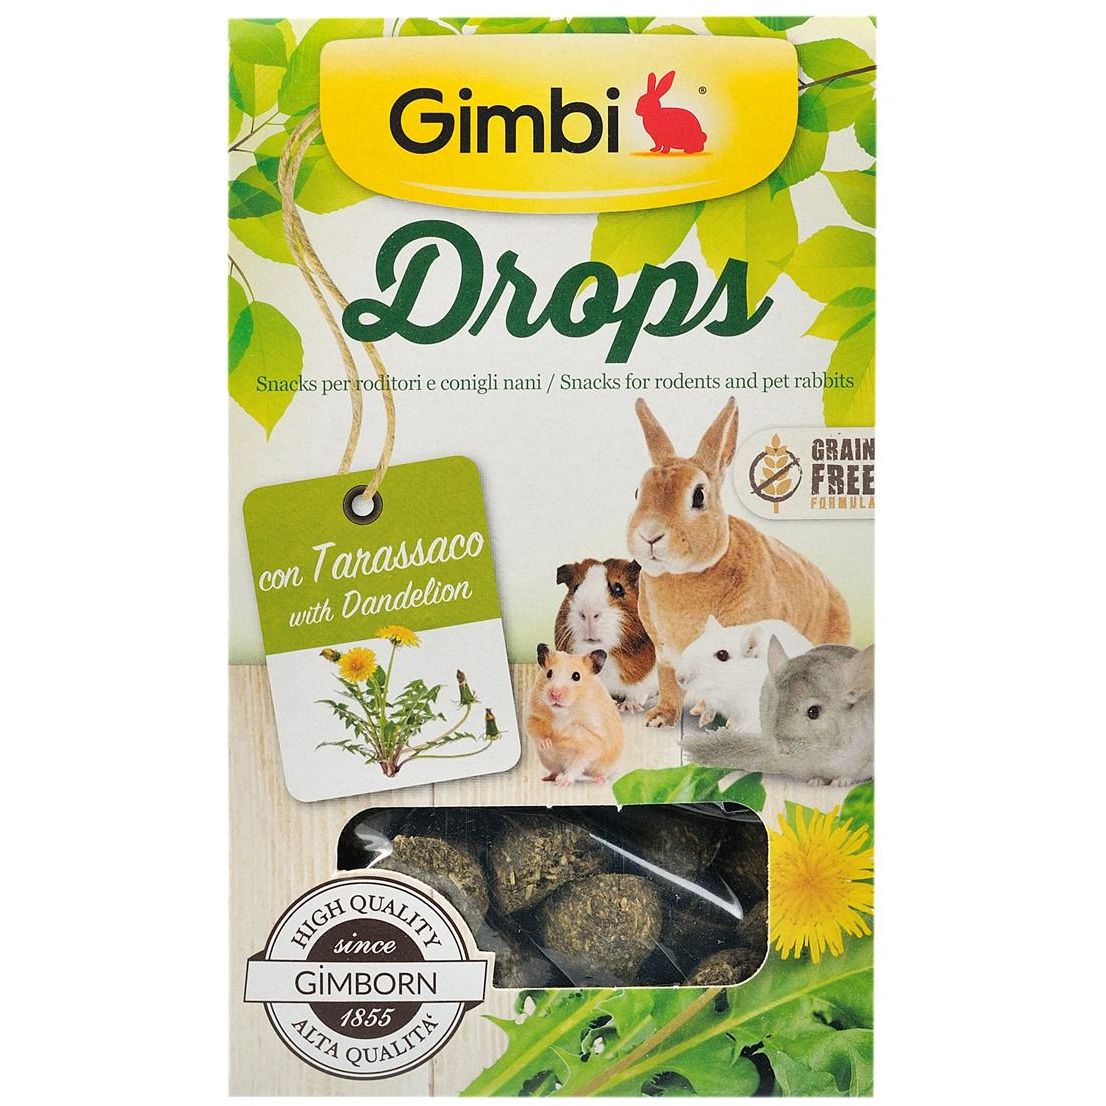 Лакомство Gimbi Drops для грызунов, дропсы с одуванчиком, 50 г - фото 3